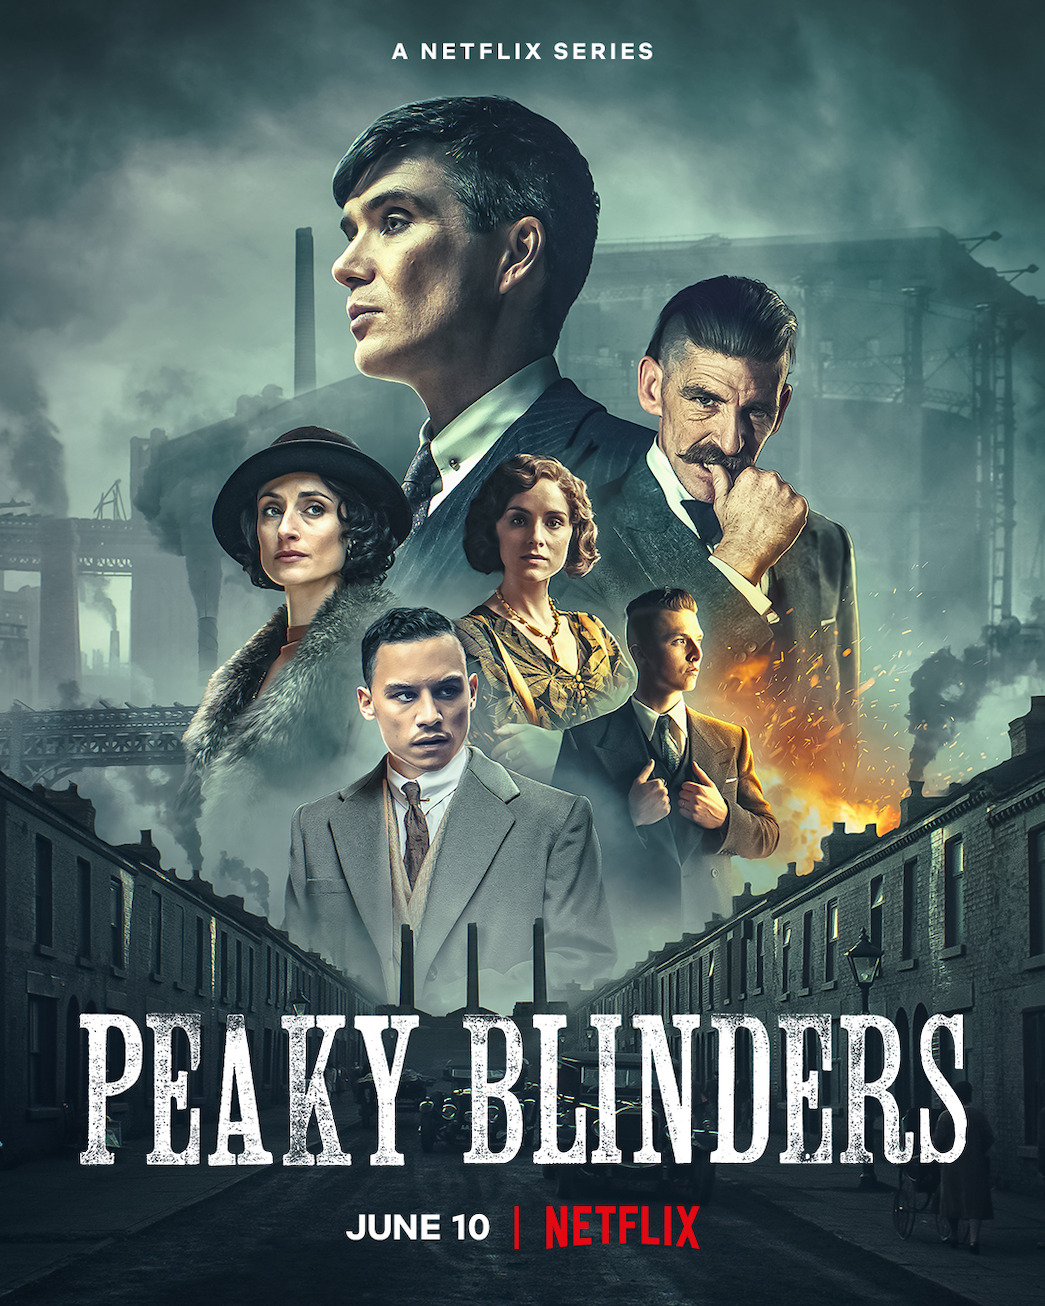 Peaky Blinders: temporada 6 fecha série, mas história continua